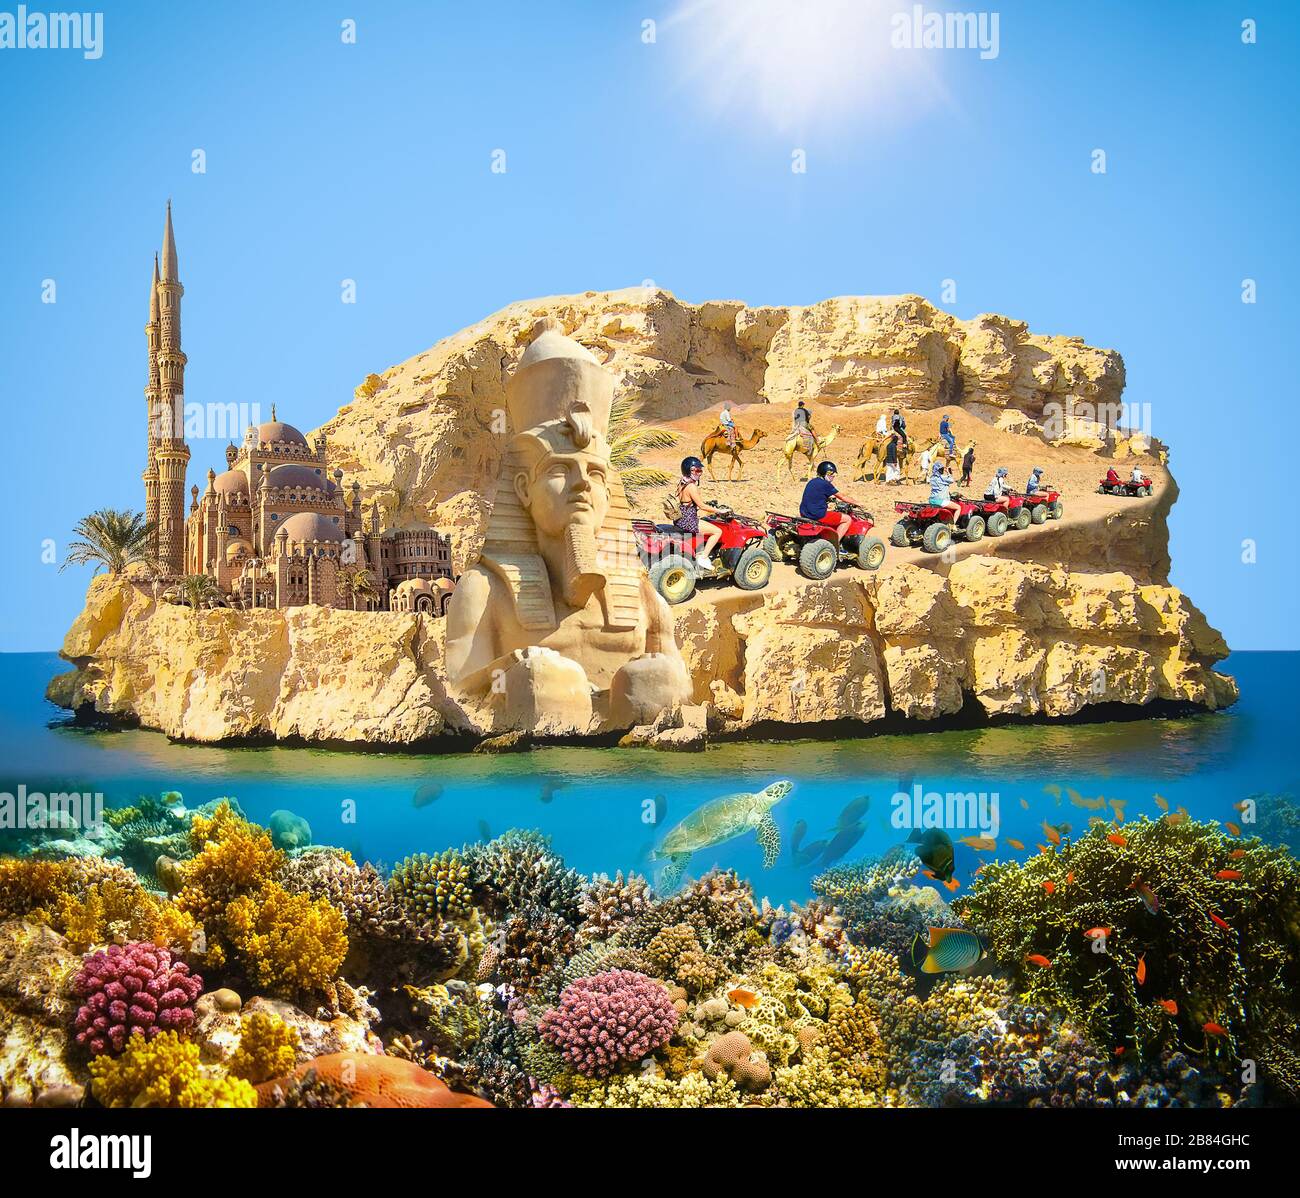 Collage sur Sharm El Sheikh, Egypte avec récif de corail et poissons. Banque D'Images